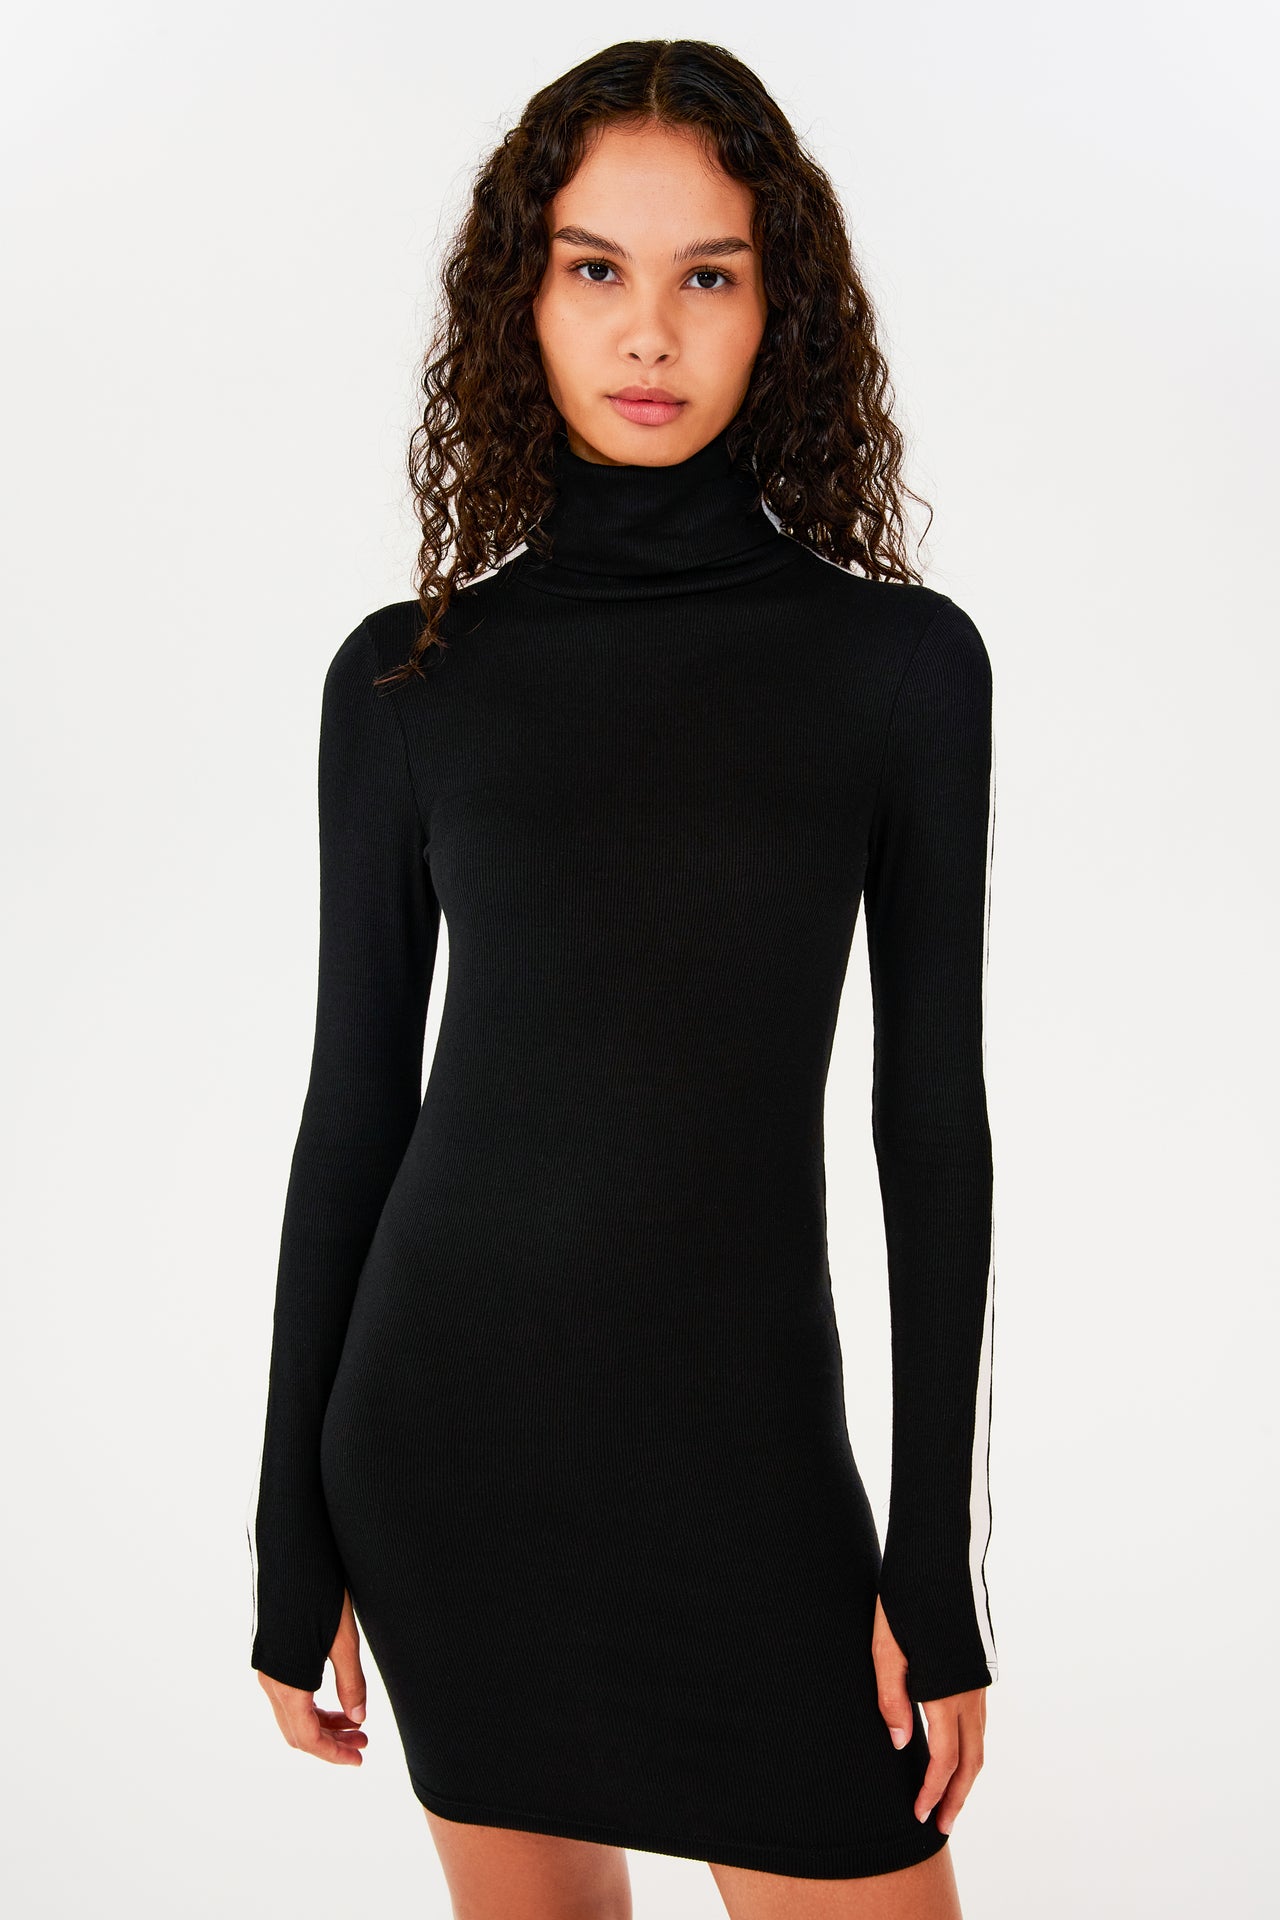 A woman wearing a black SPLITS59 Jackson Rib Turtleneck dress.